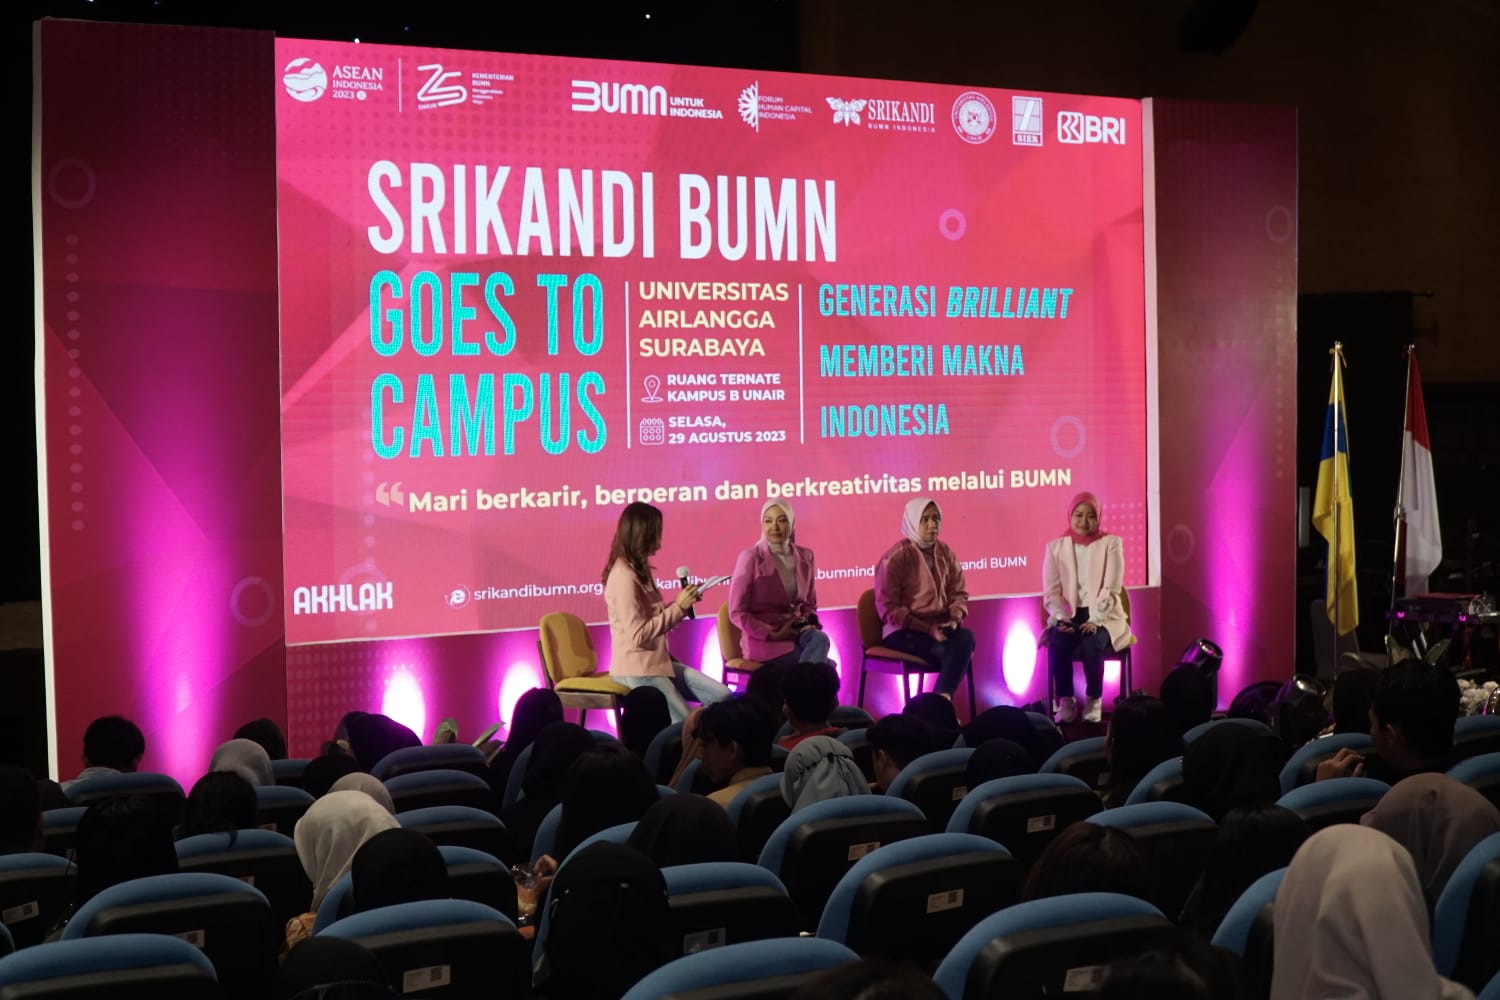 BRI & Srikandi BUMN, Ajak Perempuan Jadi Bagian dari Kemajuan Indonesia